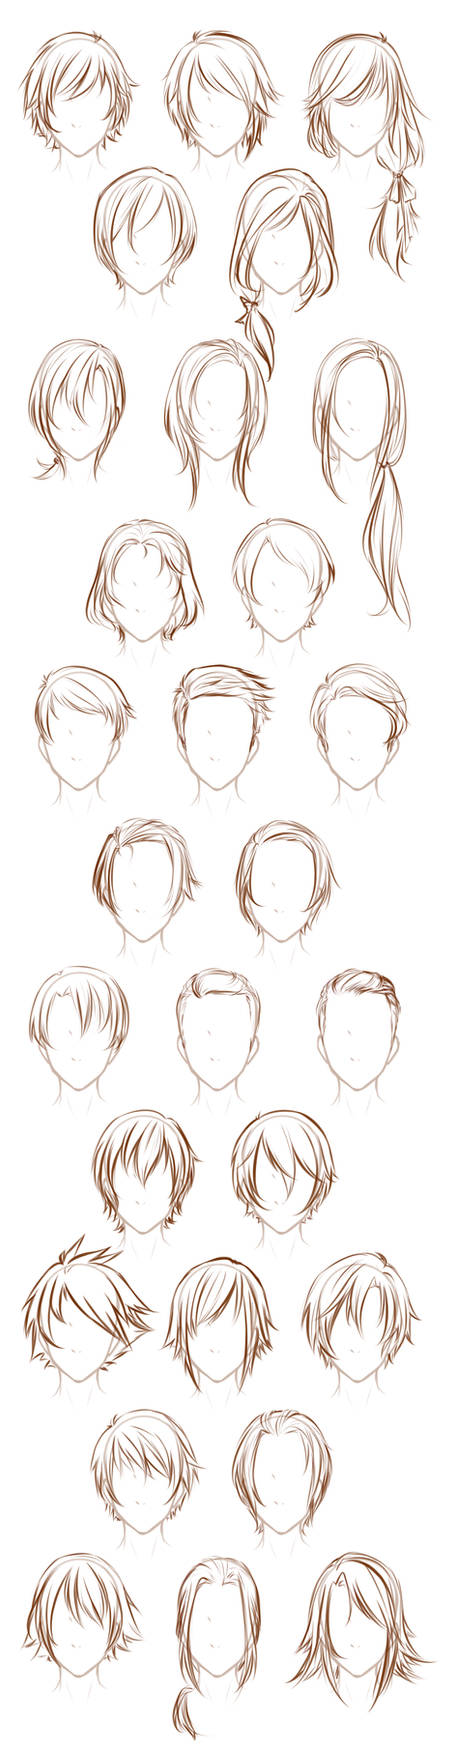 Male OC hairstyles by Lunallidoodles on DeviantArt